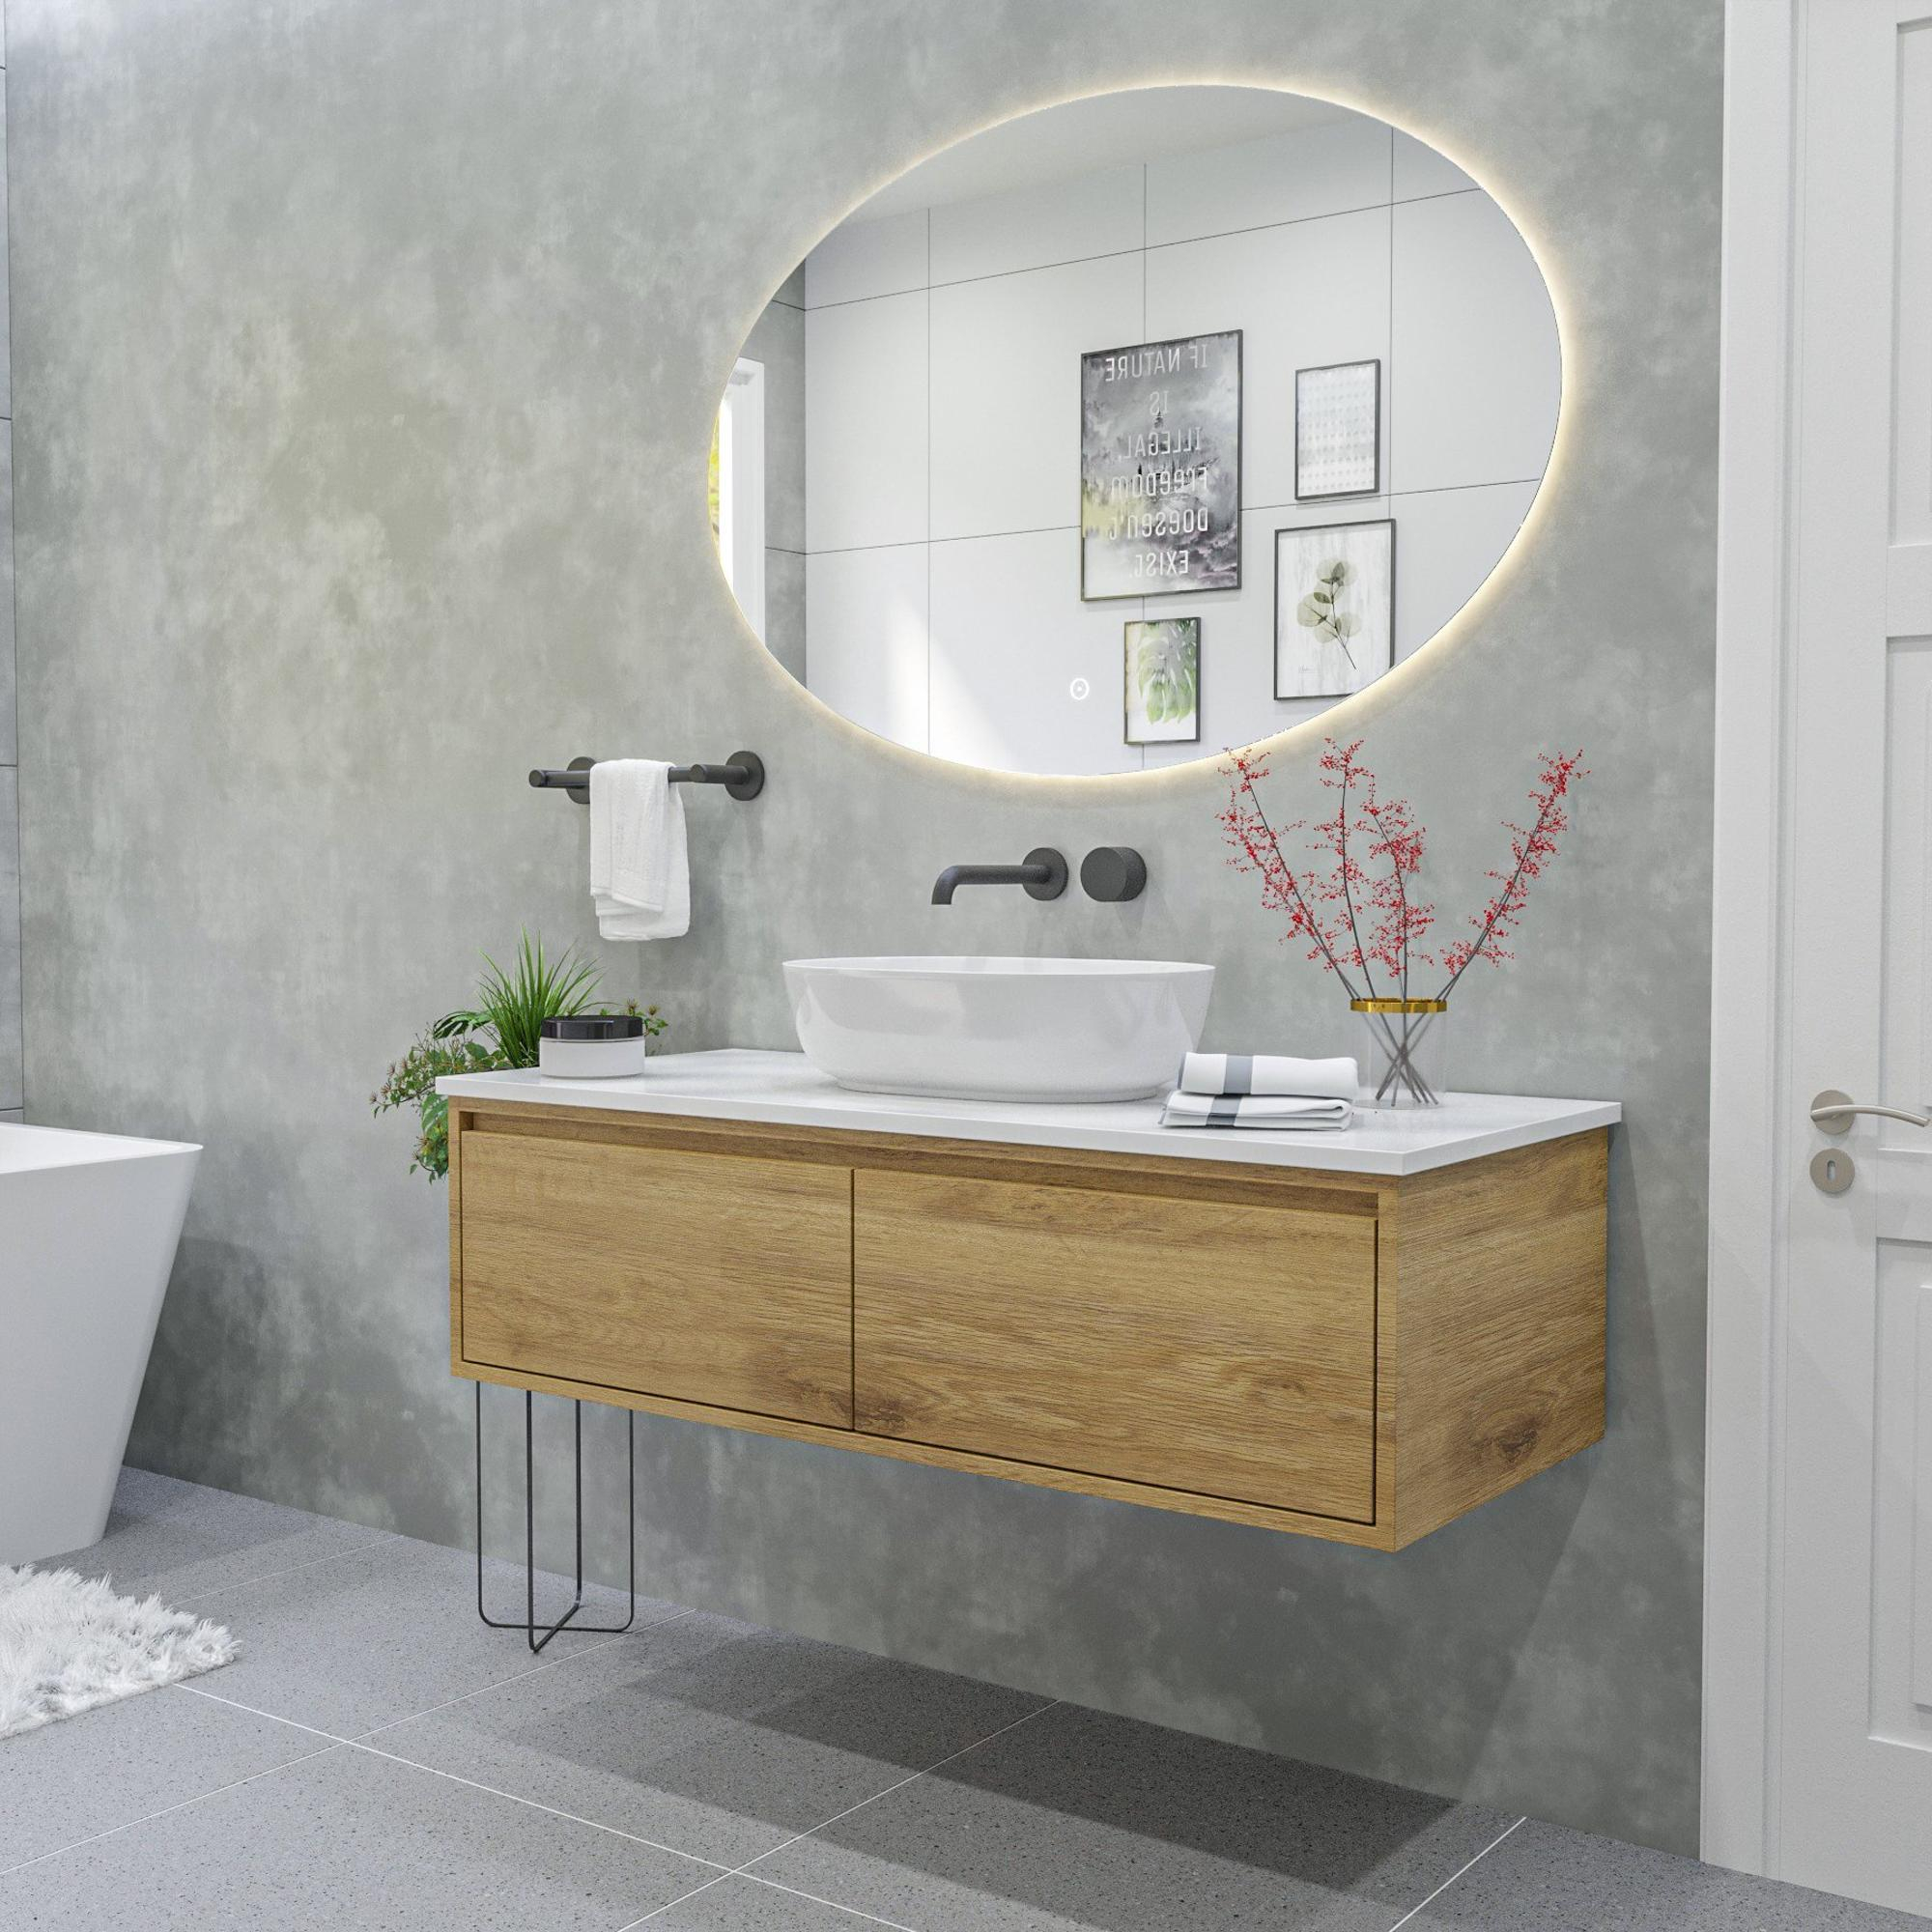 Adema Oval miroir de salle de bain ovale 120x80cm avec éclairage indirect à led  avec chauffage du miroir et interrupteur tactile - NAB001-B-120x80 